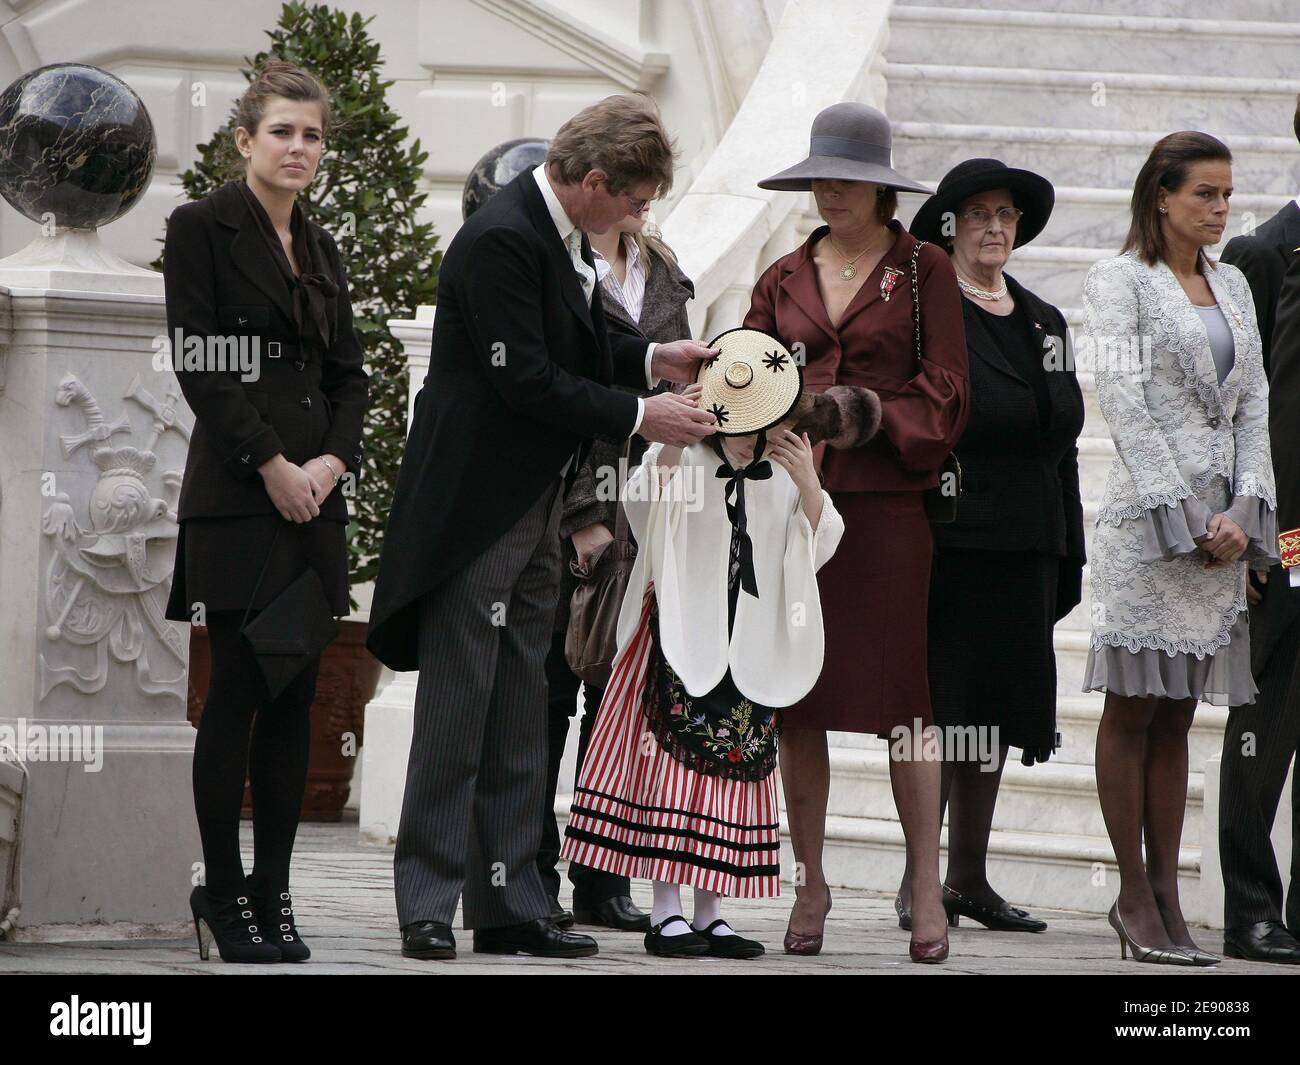 La famiglia reale (l tp r) la principessa Charlotte Casiraghi, il principe  Ernst-August di Hannover, la principessa Alexandra e la madre principessa  Caroline e le principesse Stephanie sono visti durante la cerimonia